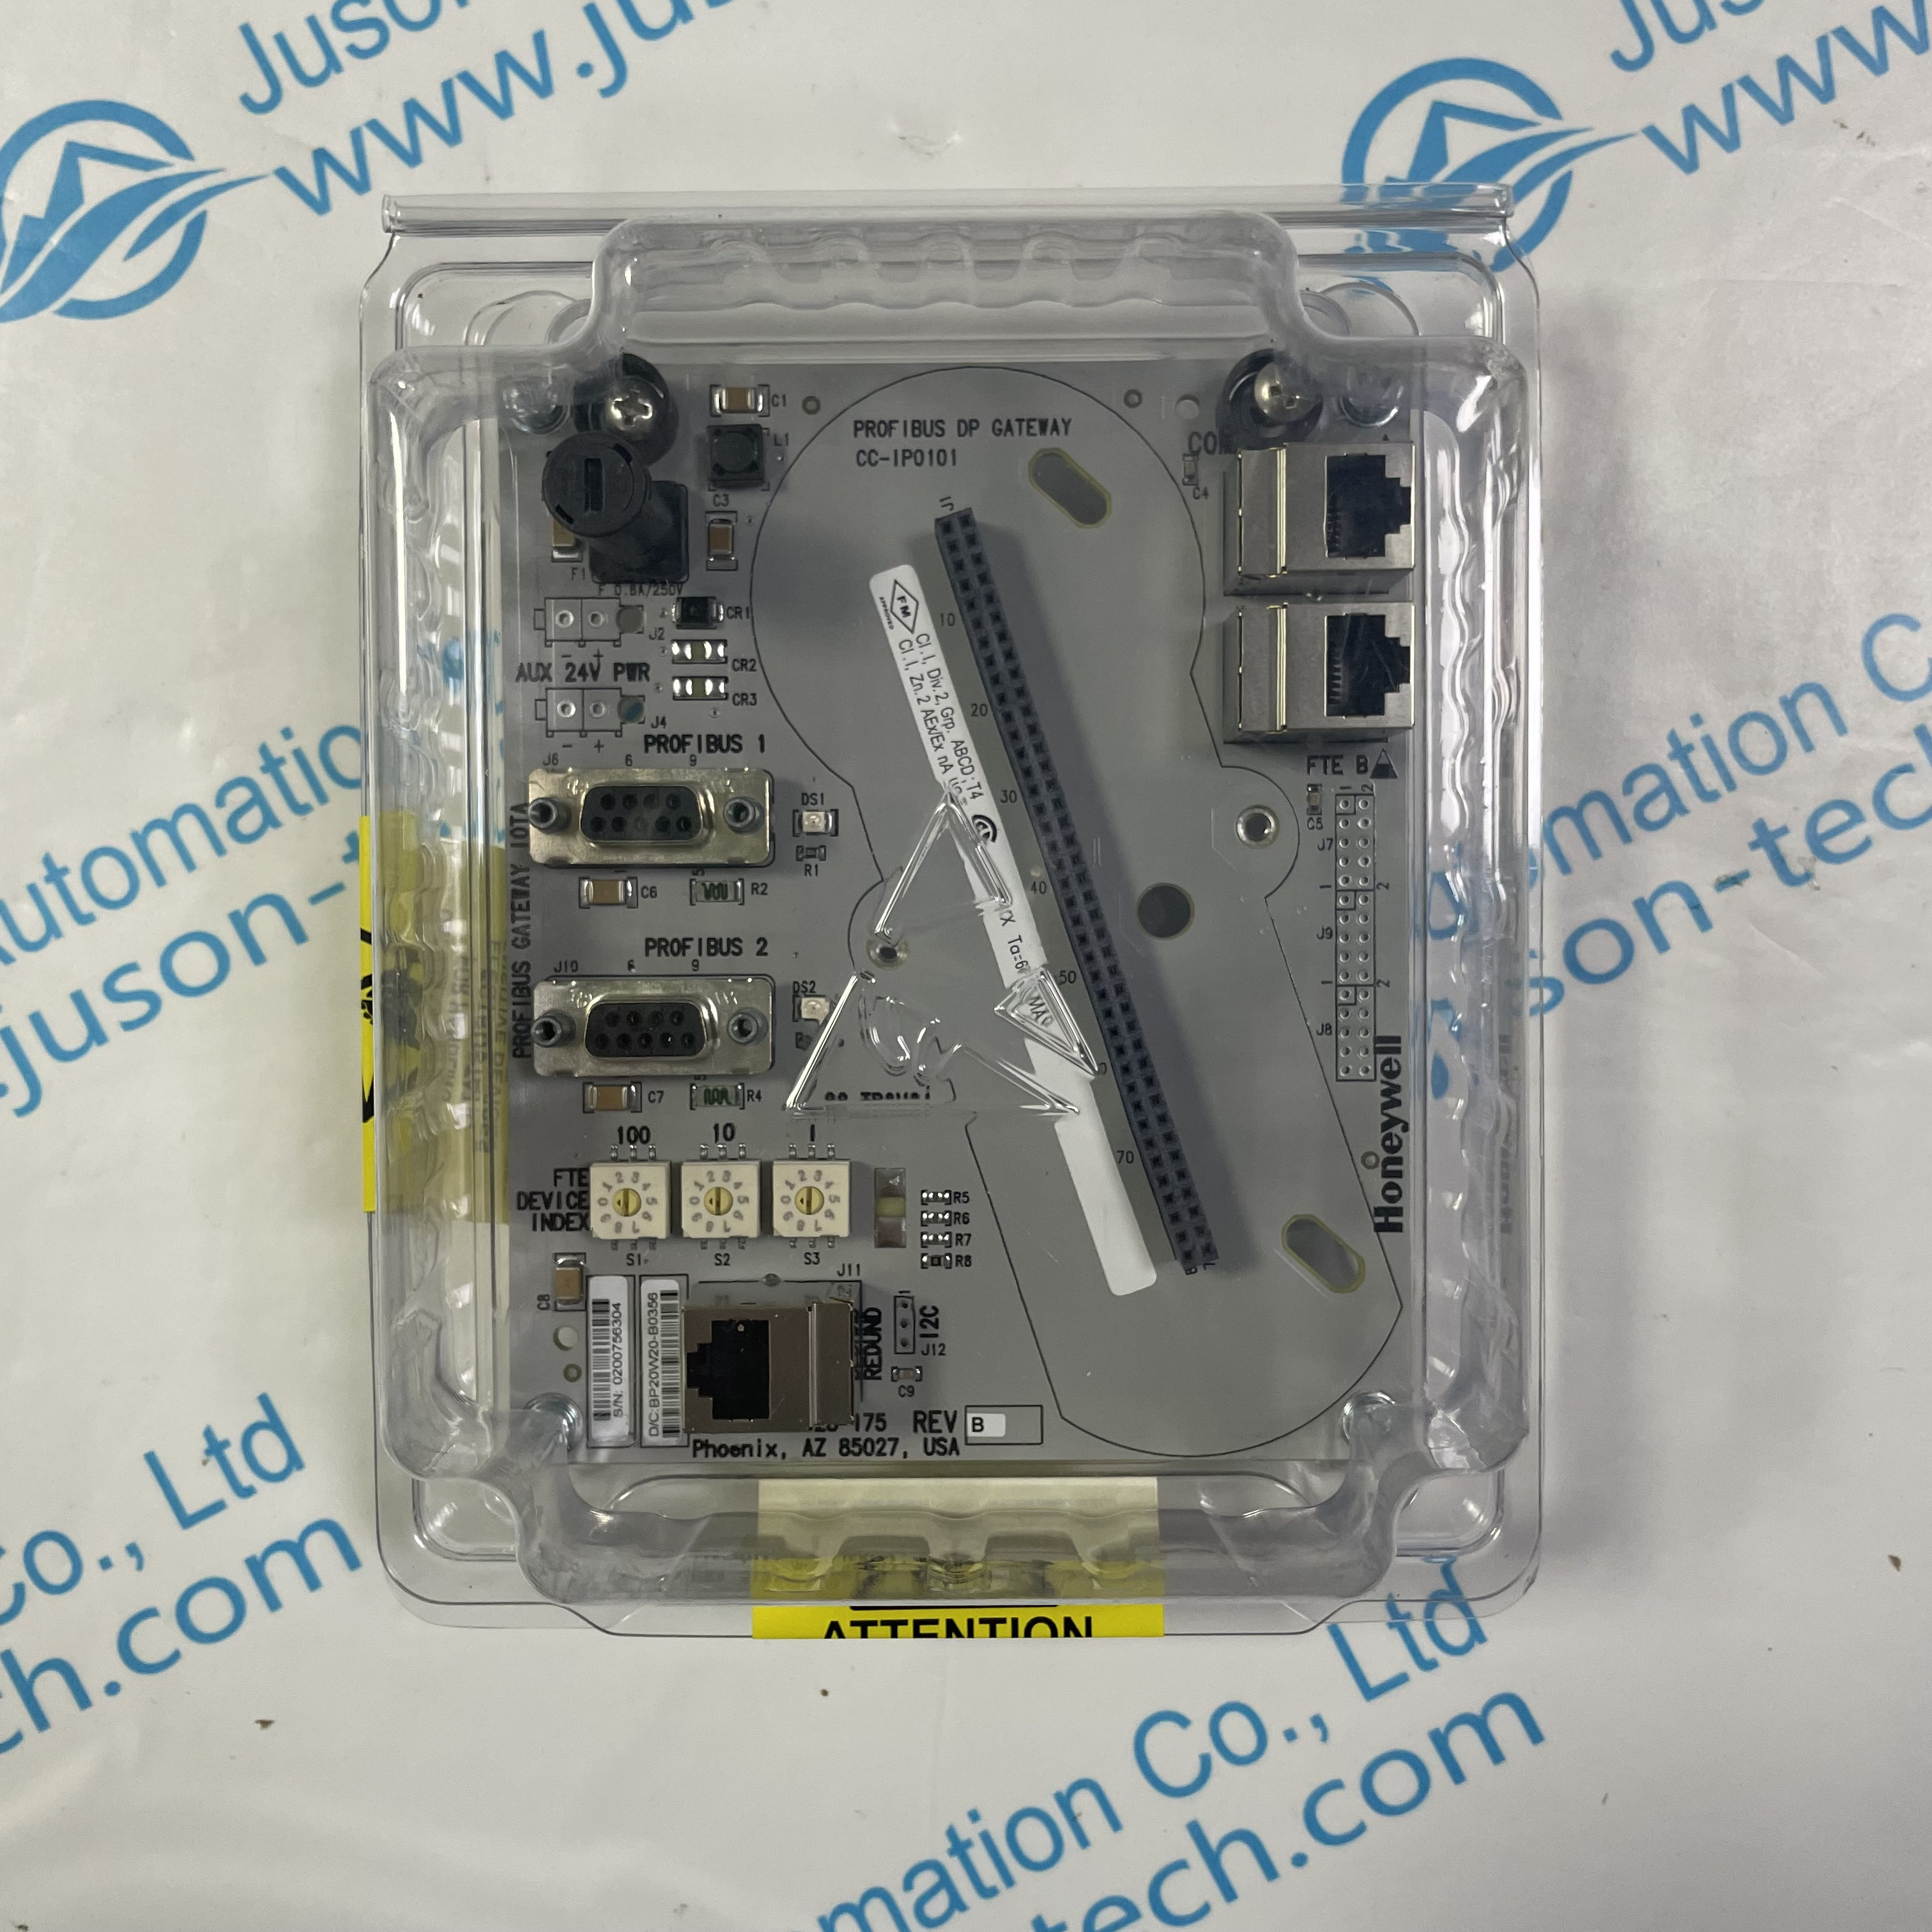 Honeywell input/output card module CC-TPOX01 